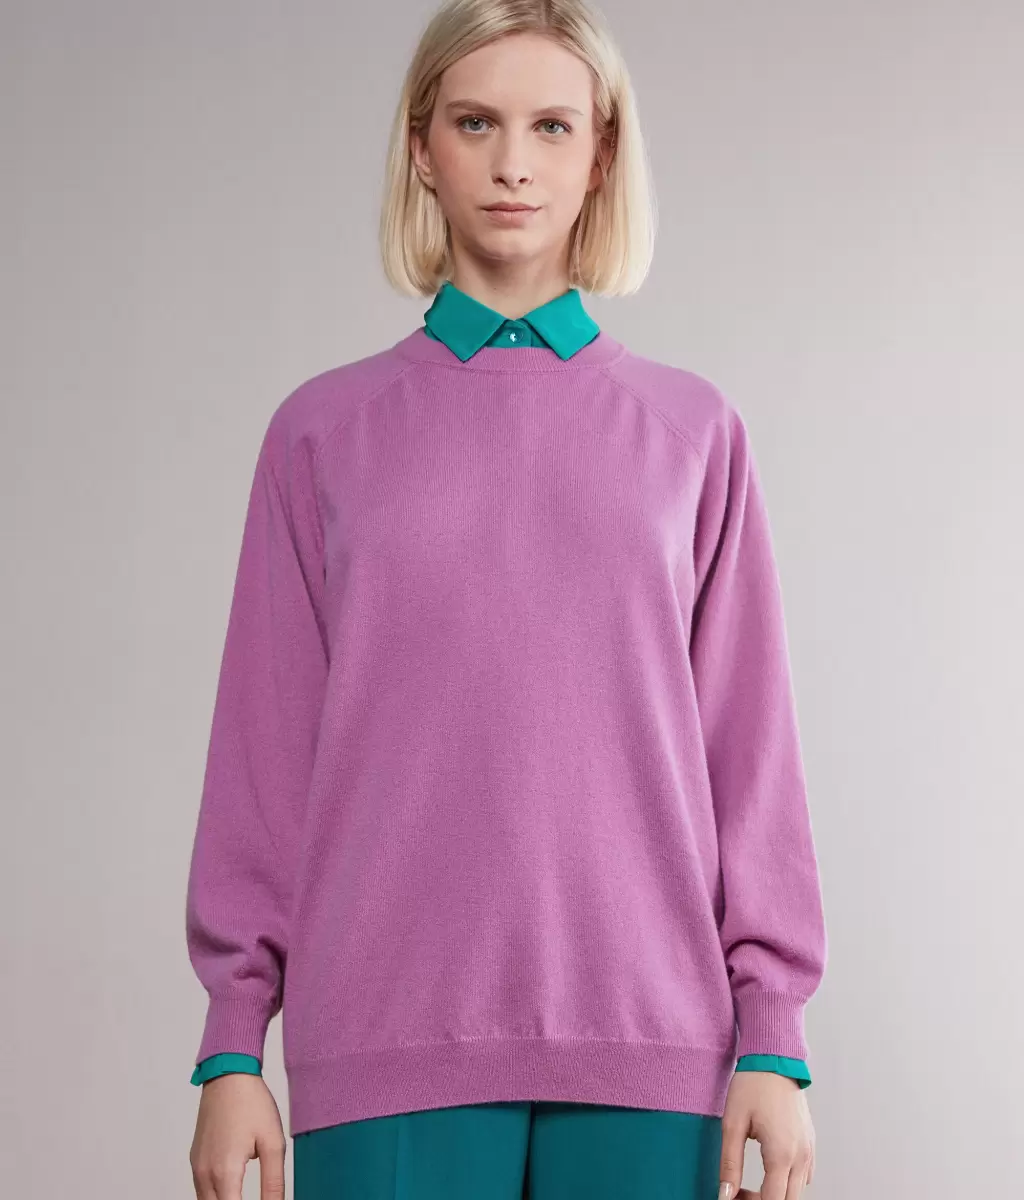 Falconeri Swetry Z Okrągłym Dekoltem Kobieta Bluzka Maxi Z Okągłym Dekoltem Z Kaszmiru Ultrasoft Pink - 1